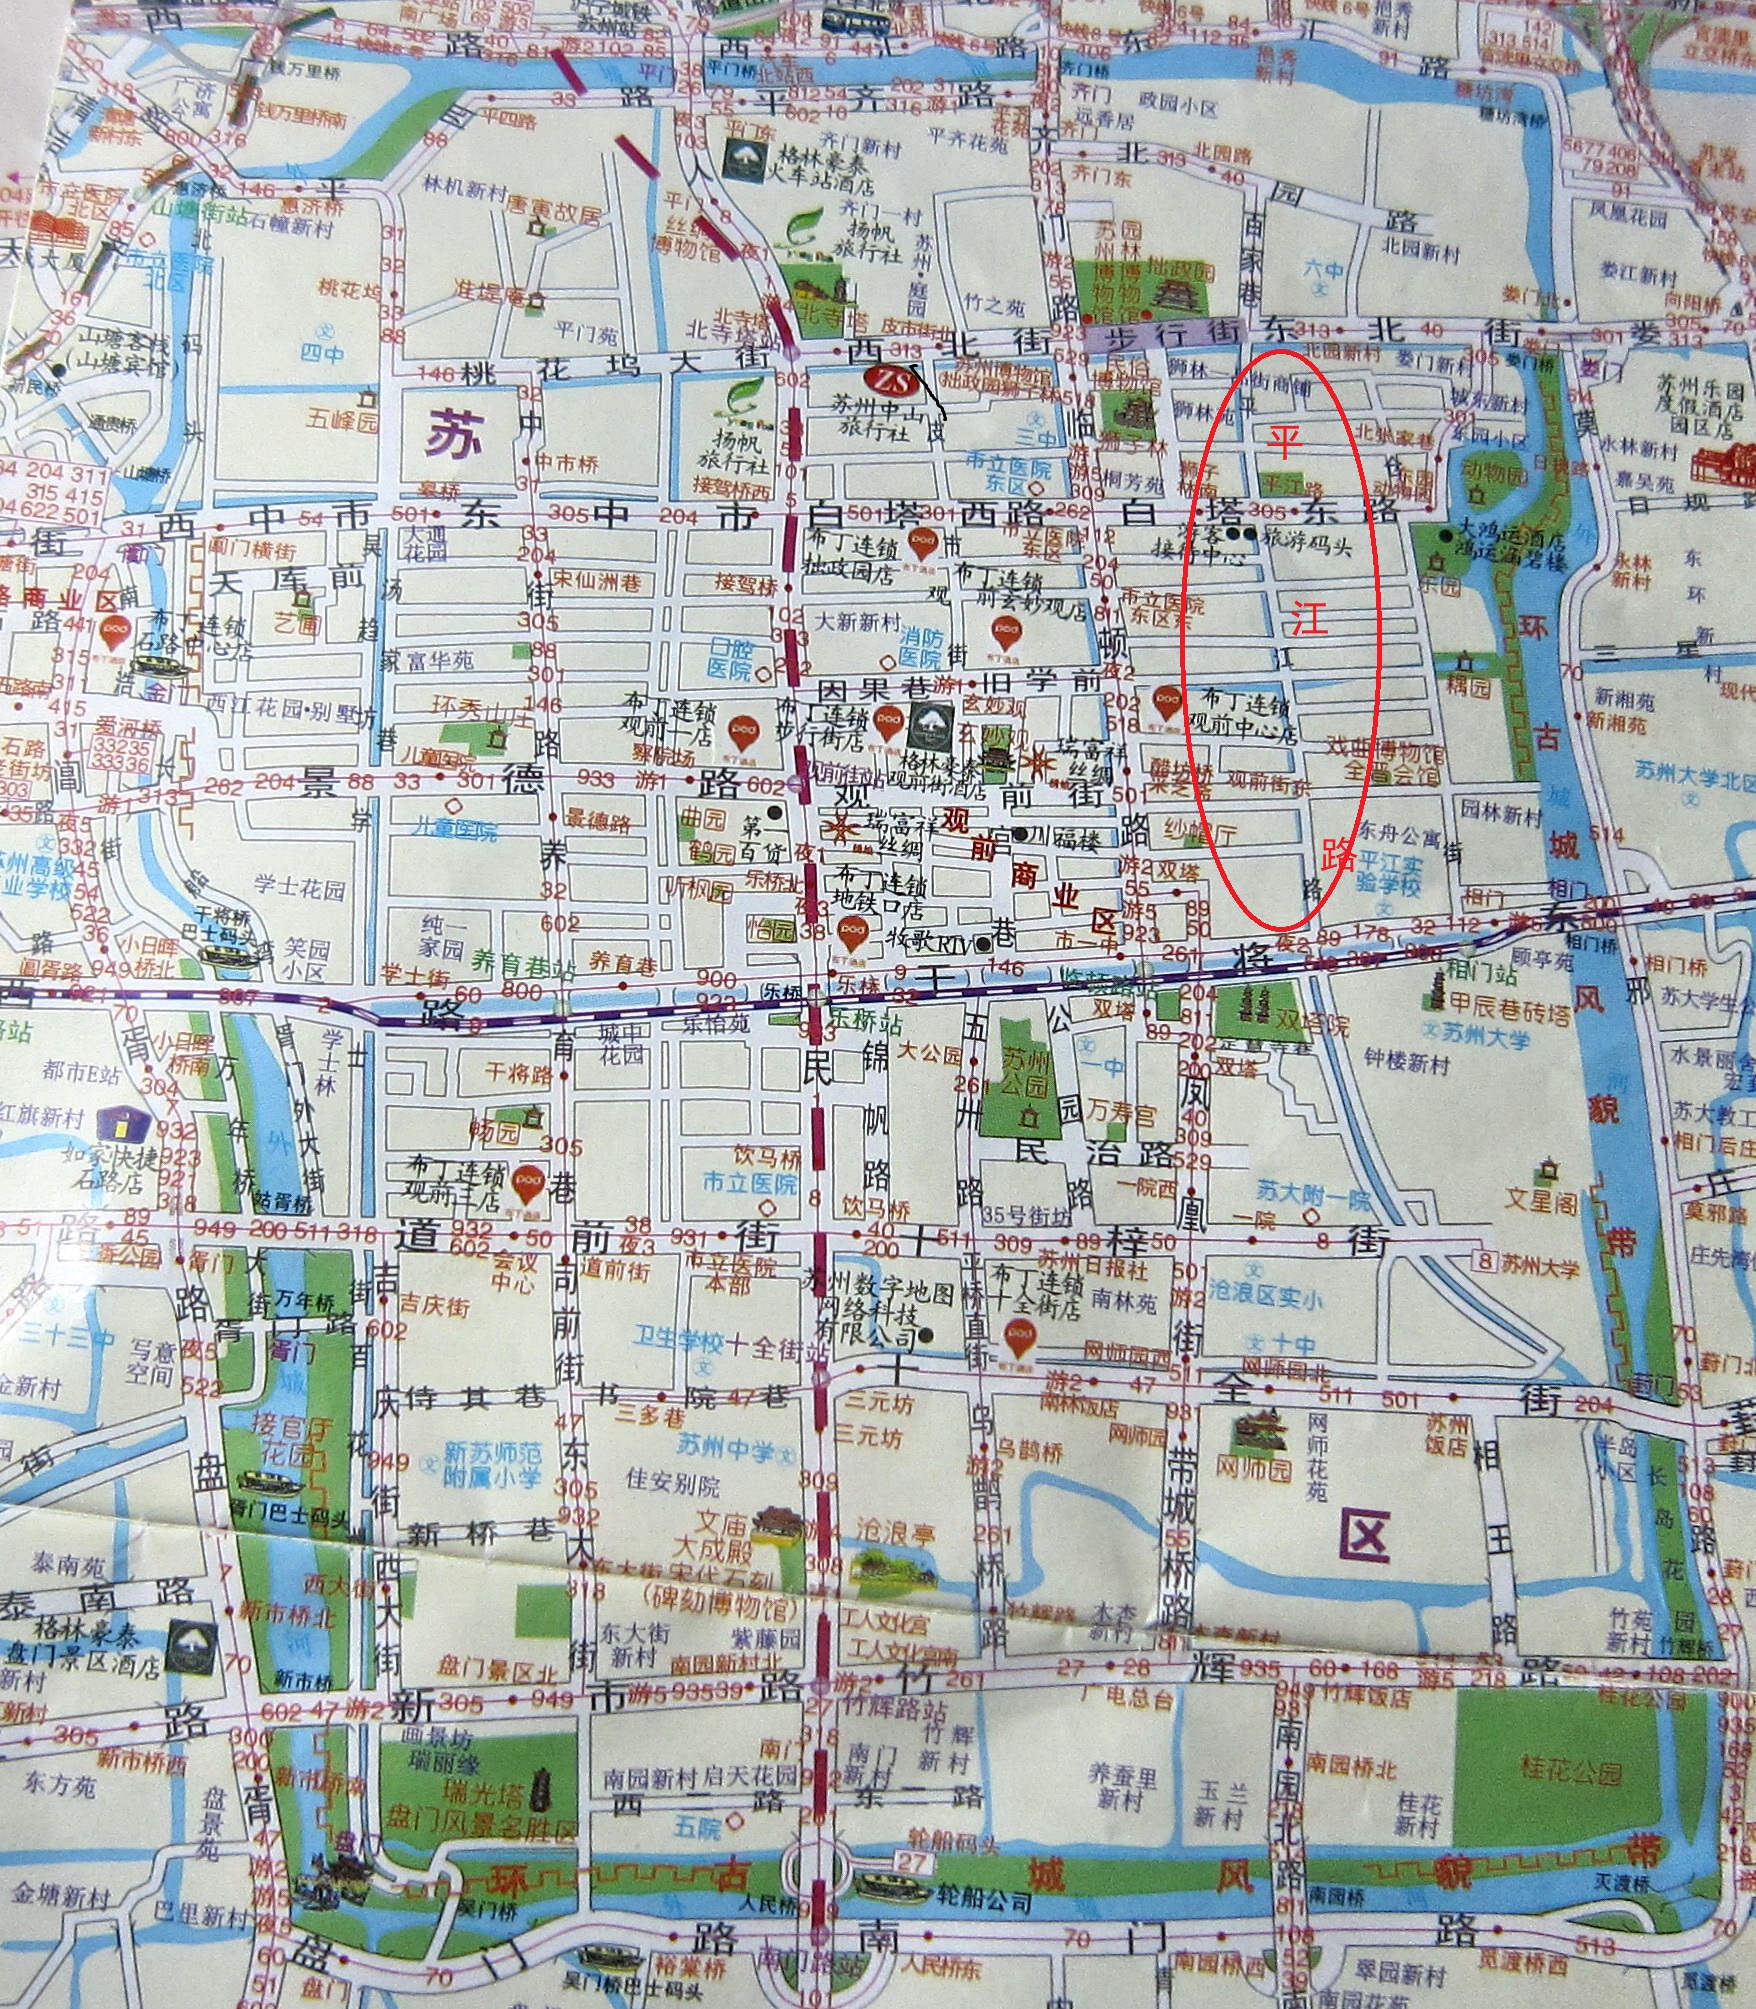 平江路历史街区地图图片